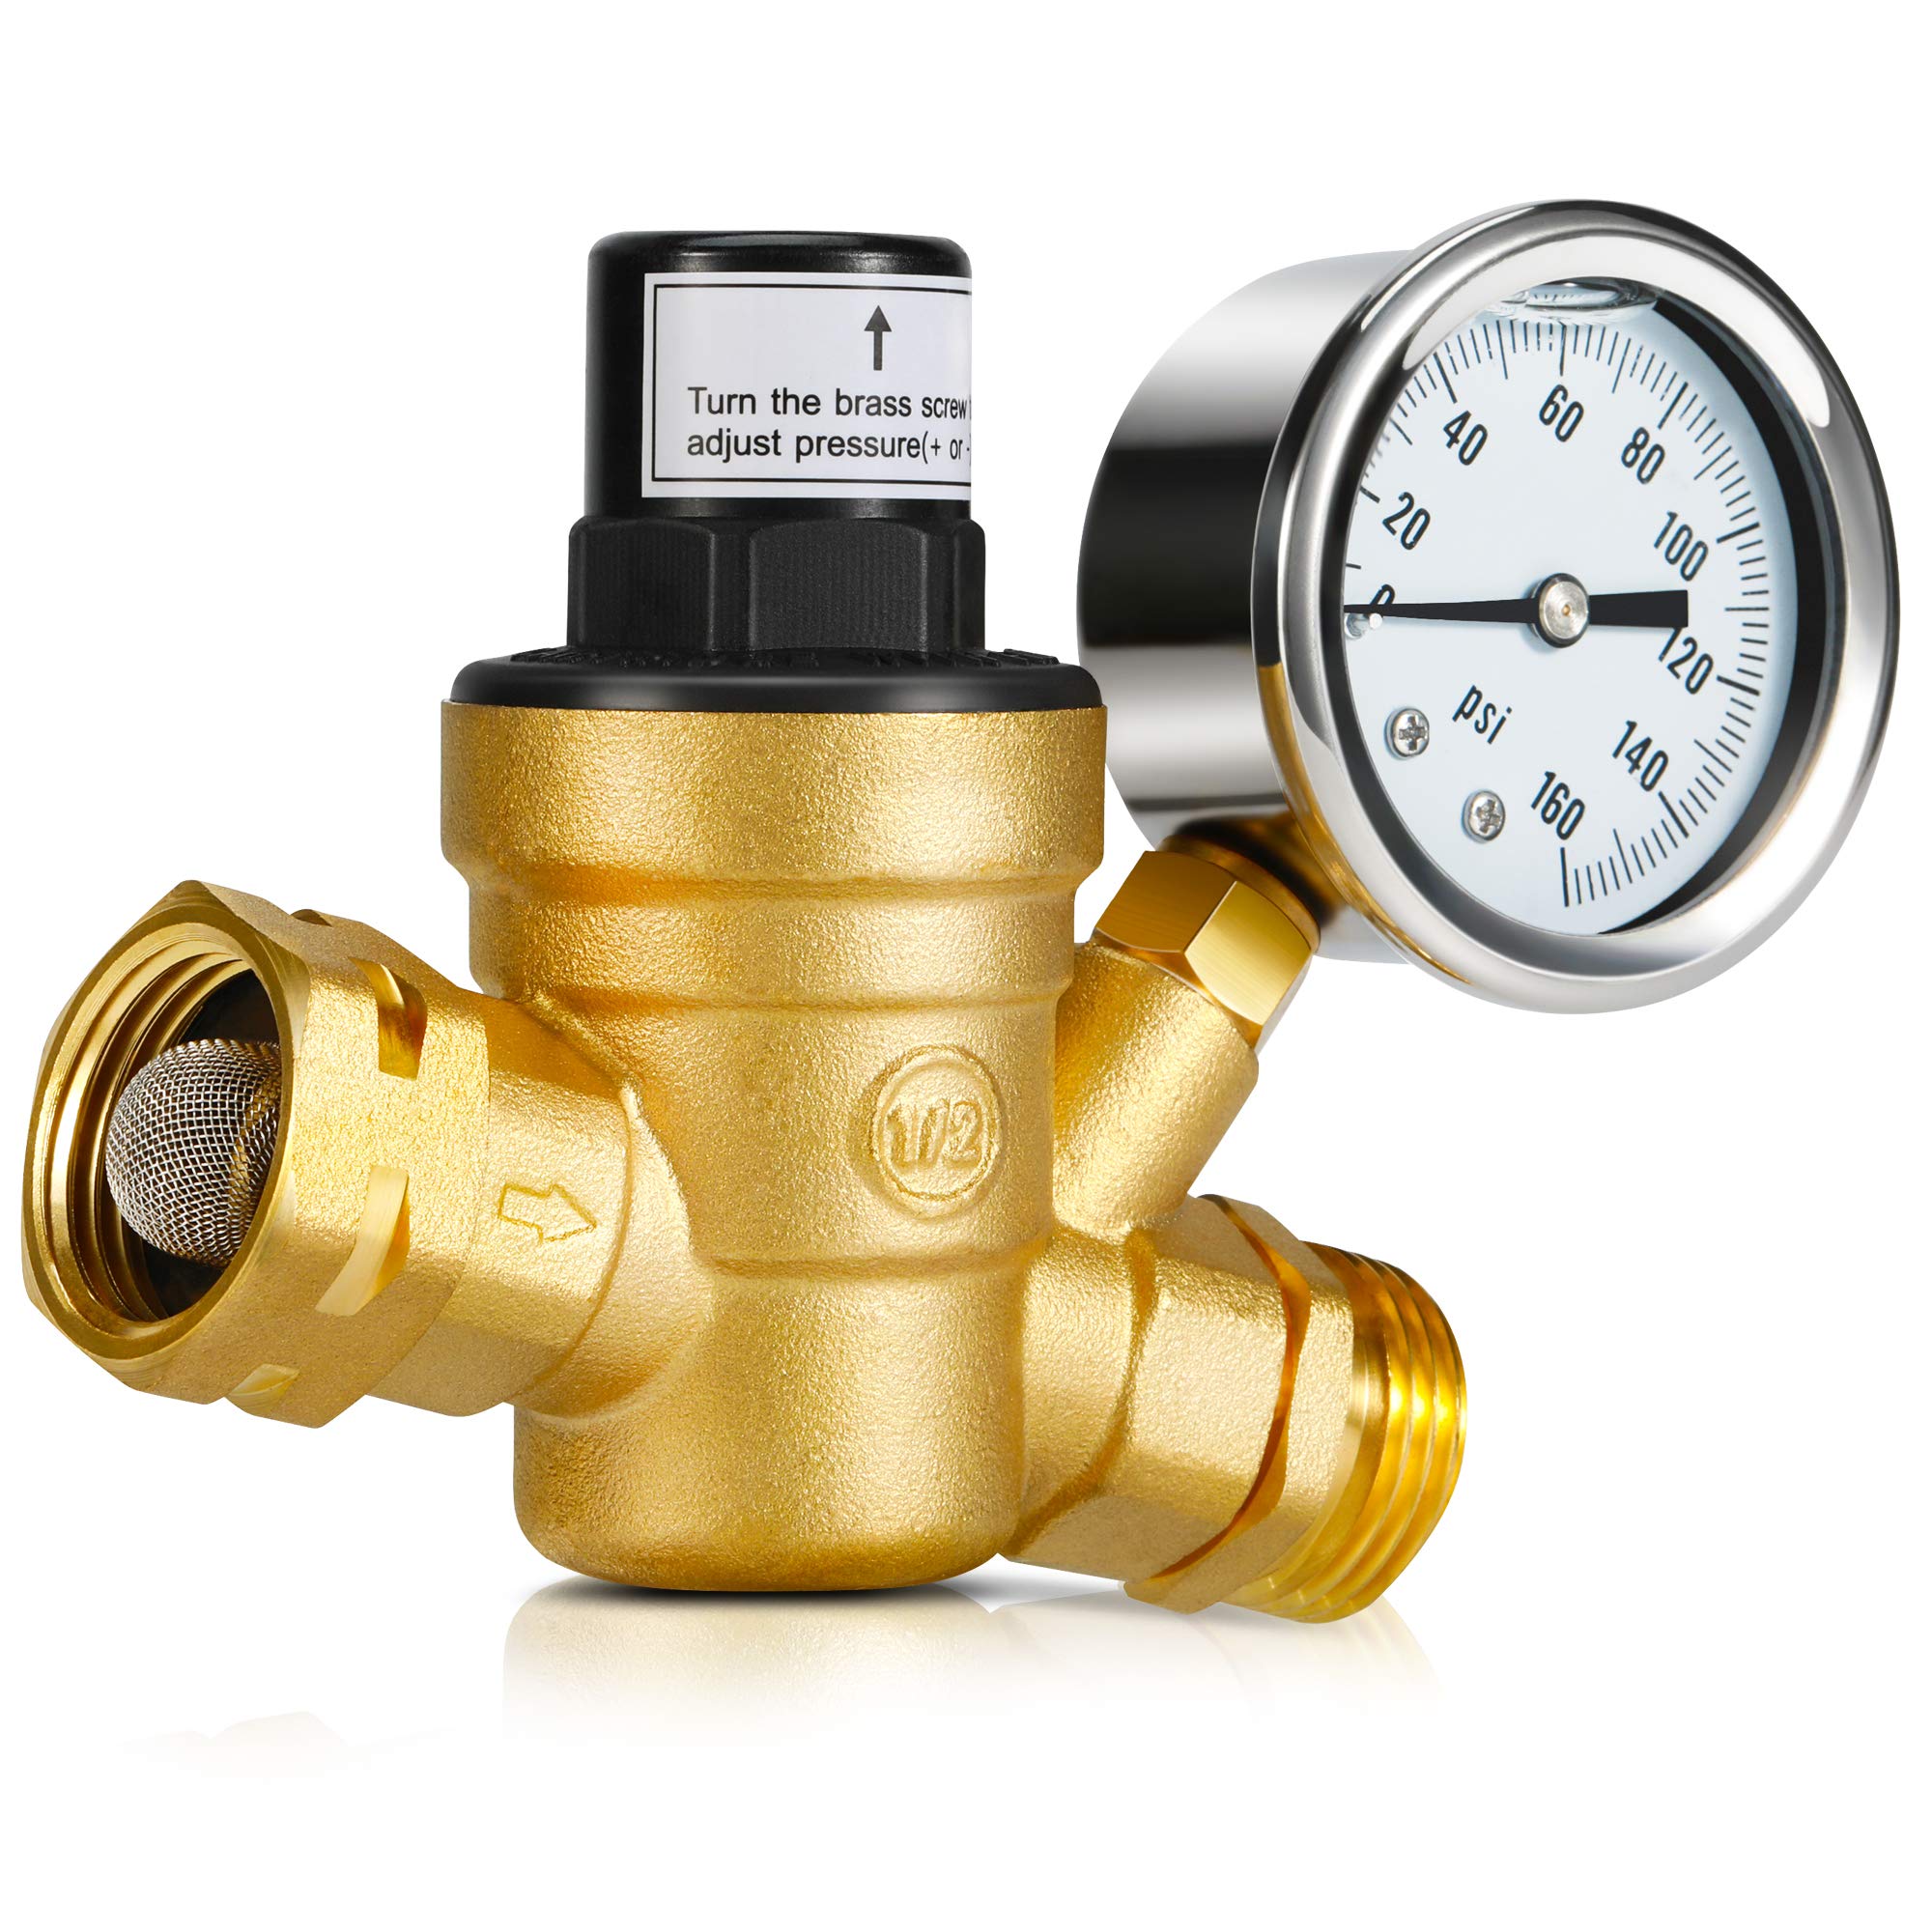 Kohree Adjustable RV Water Pressure Regulator Valve